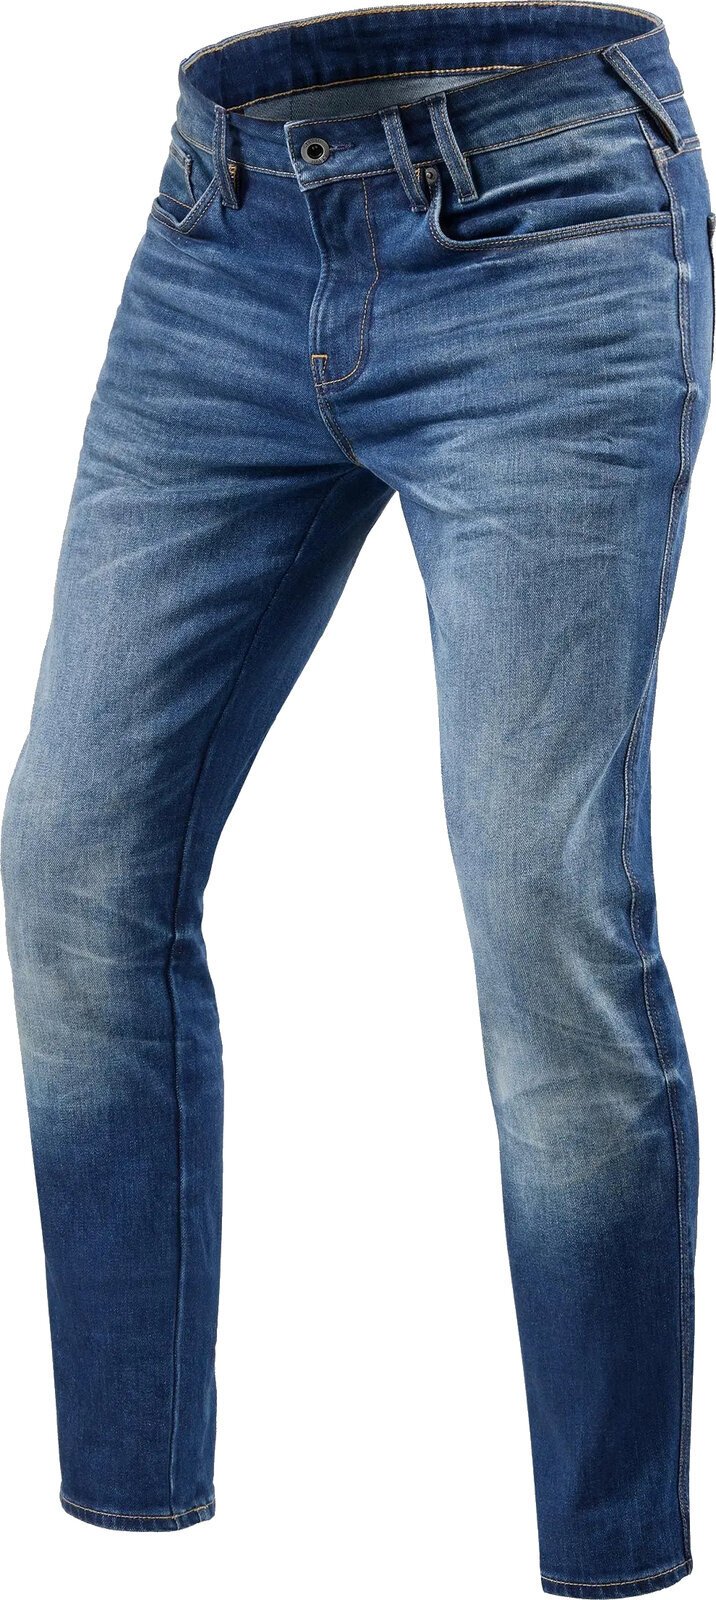 Motoristične jeans hlače Rev'it! Jeans Carlin SK Medium Blue 32/30 Motoristične jeans hlače